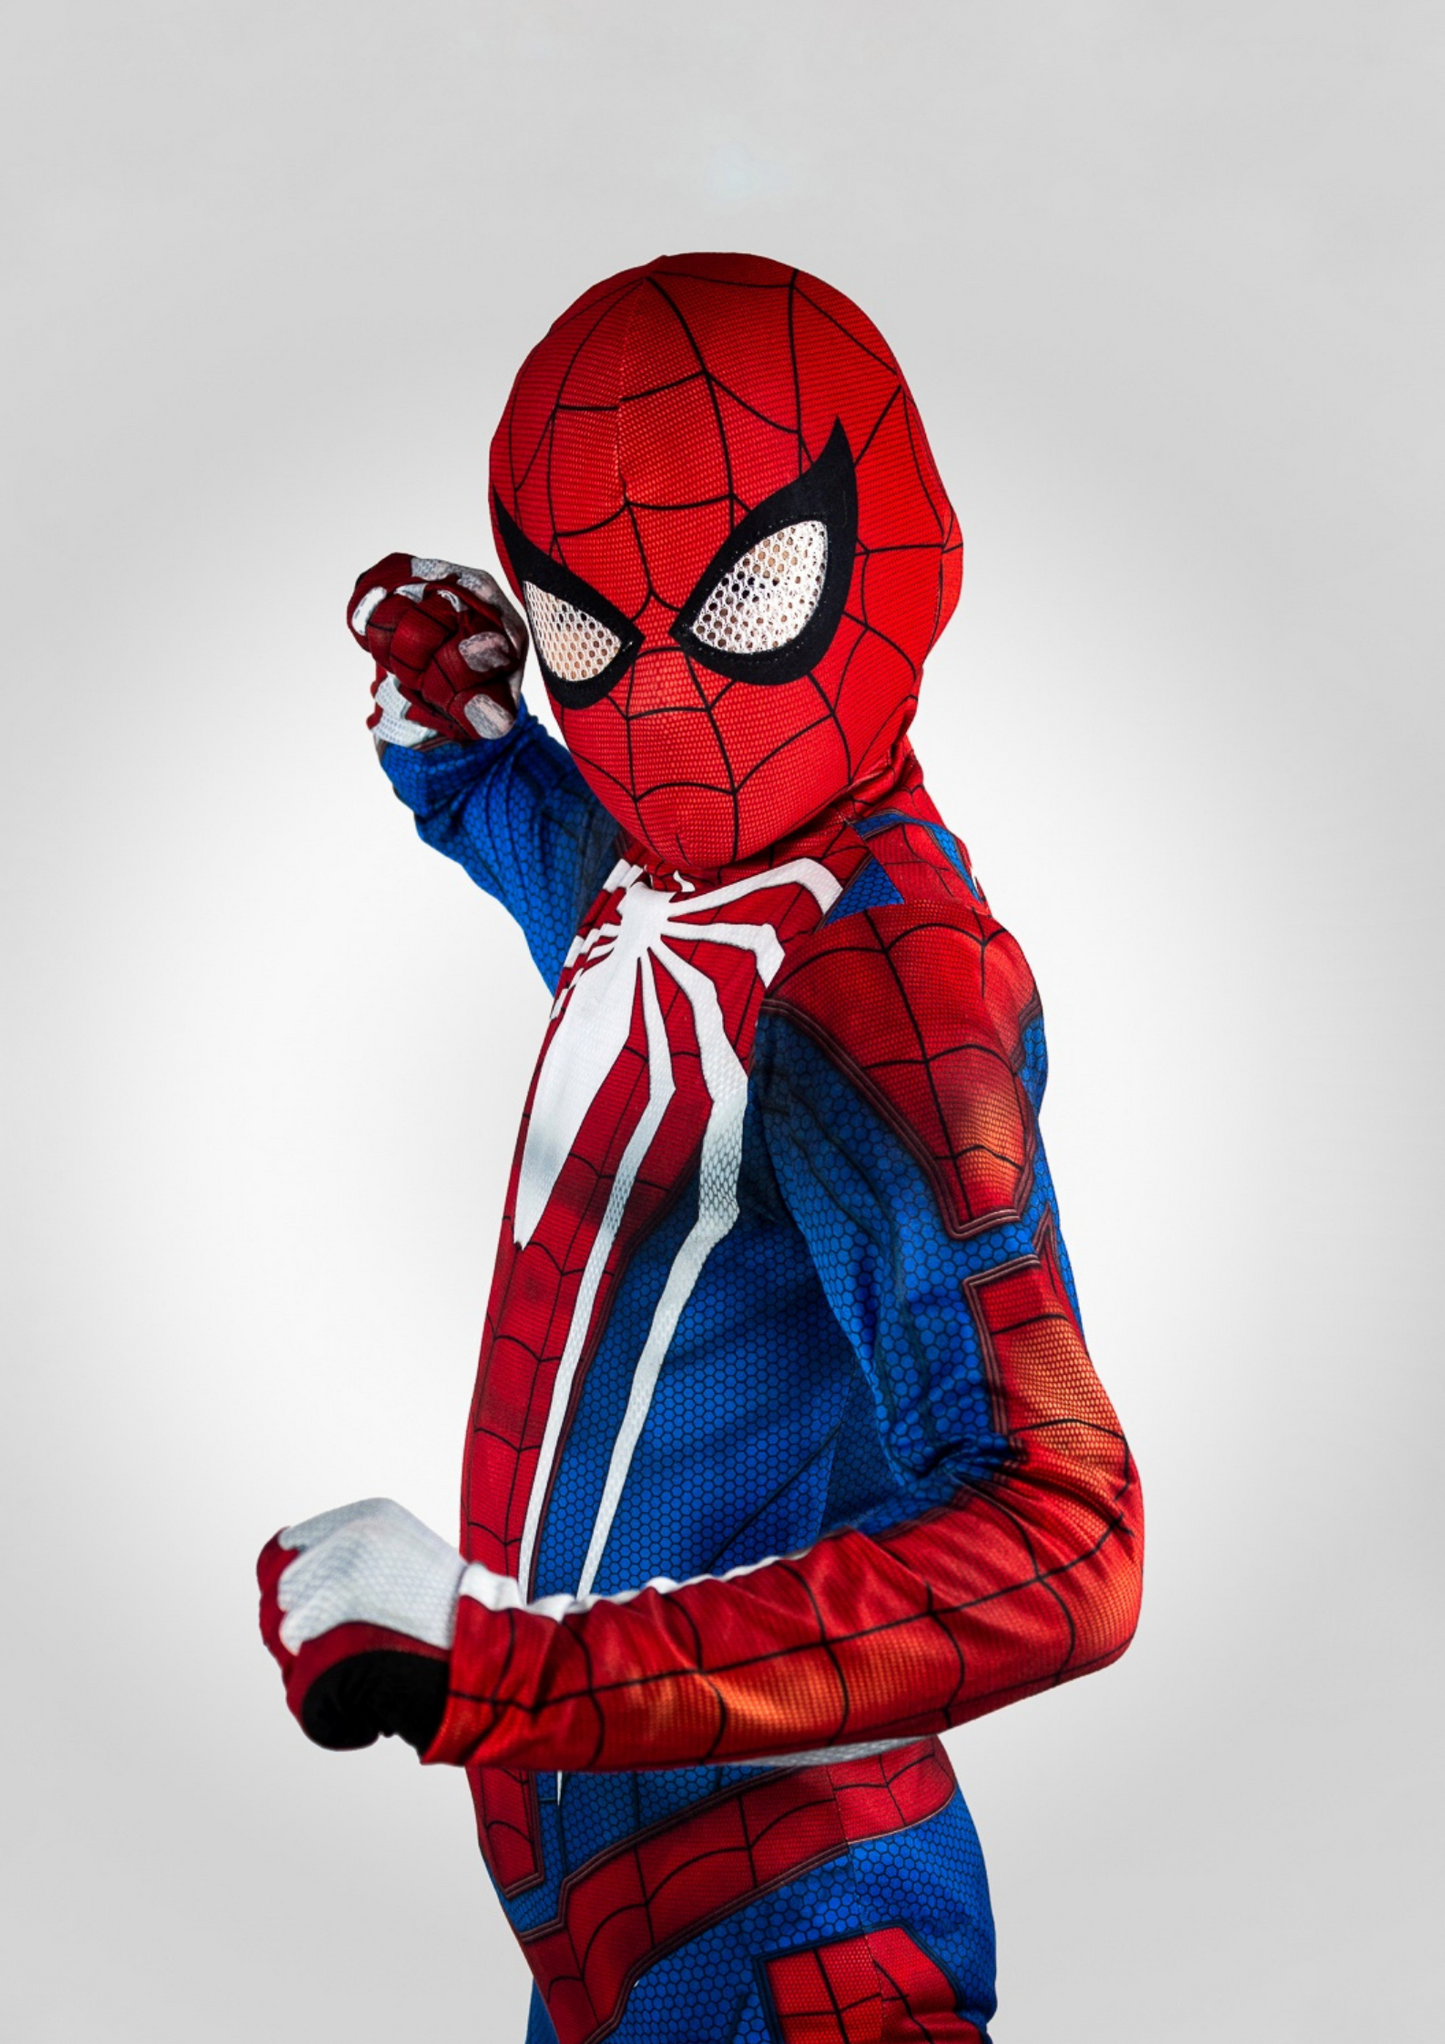 Spiderman PS4 – Todo Accesorios Colombia